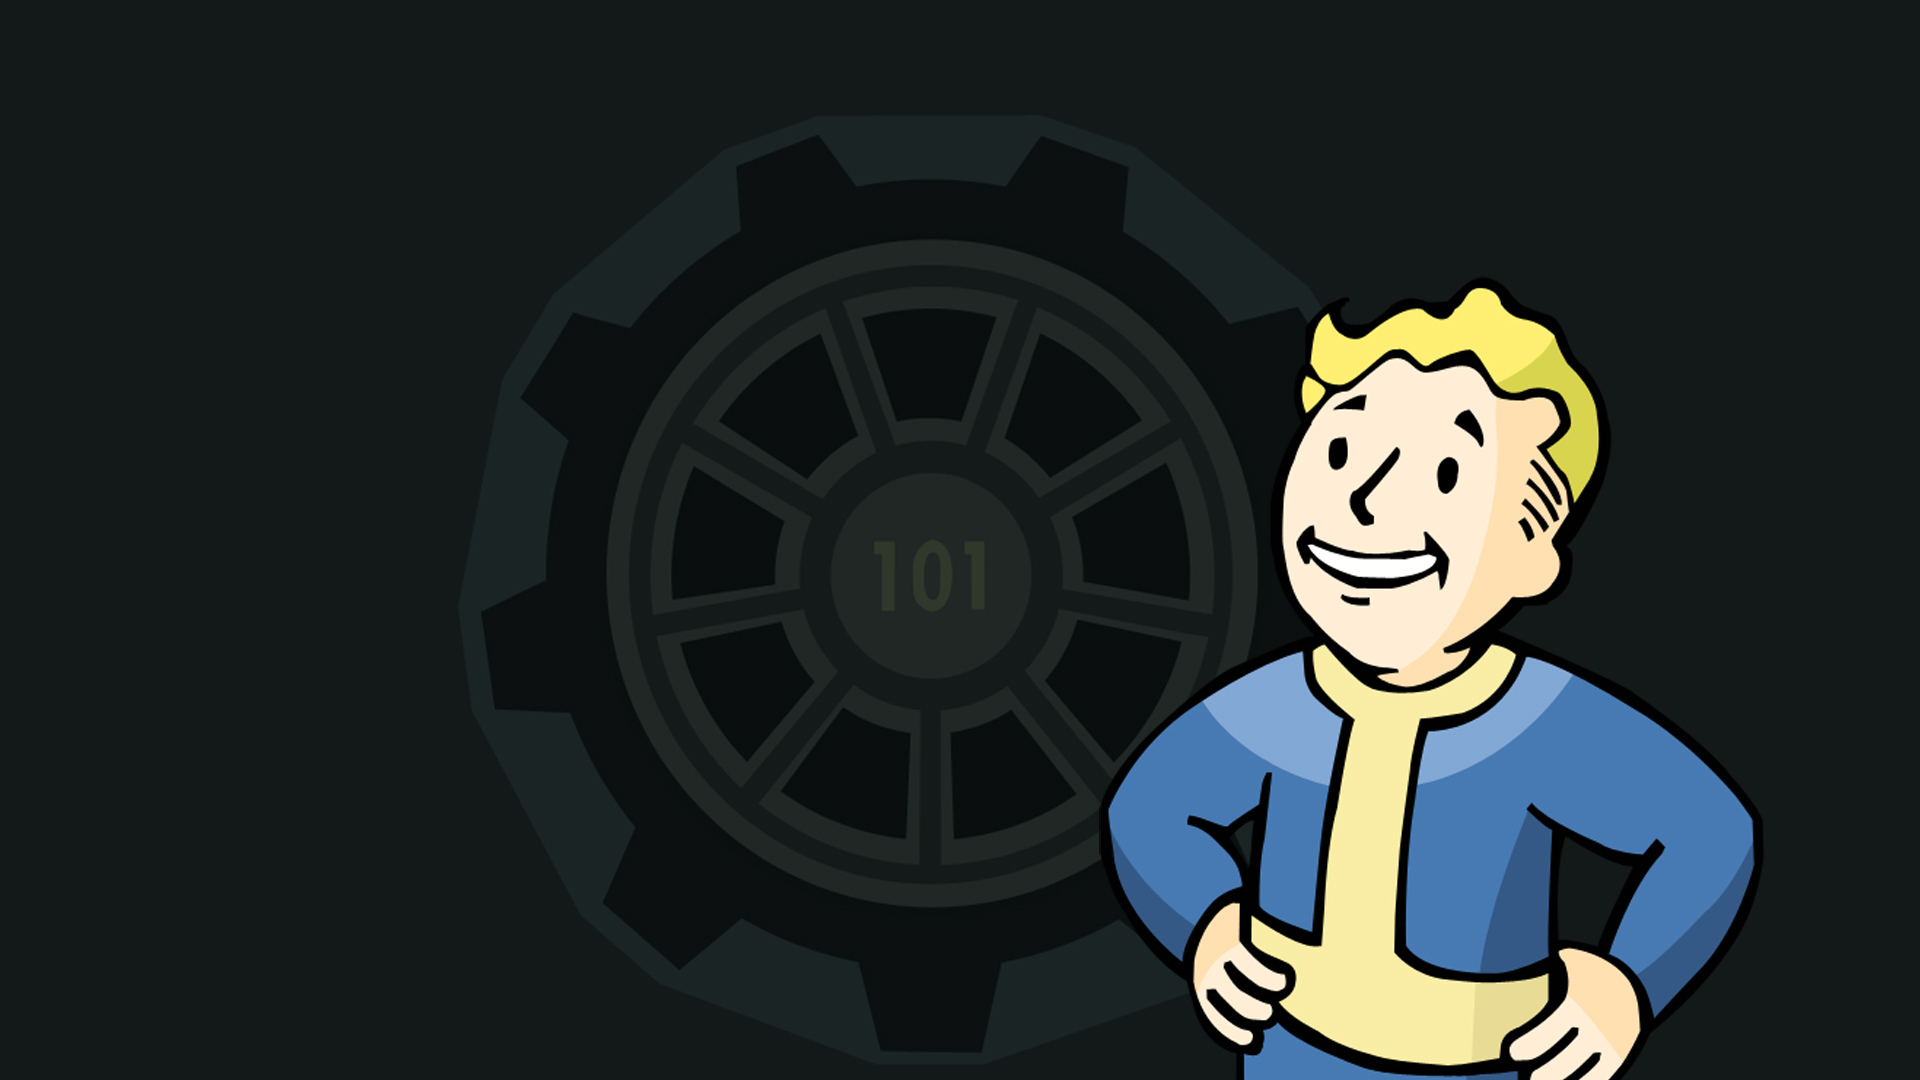 Fallout Puter Wallpaper Desktop Background Id